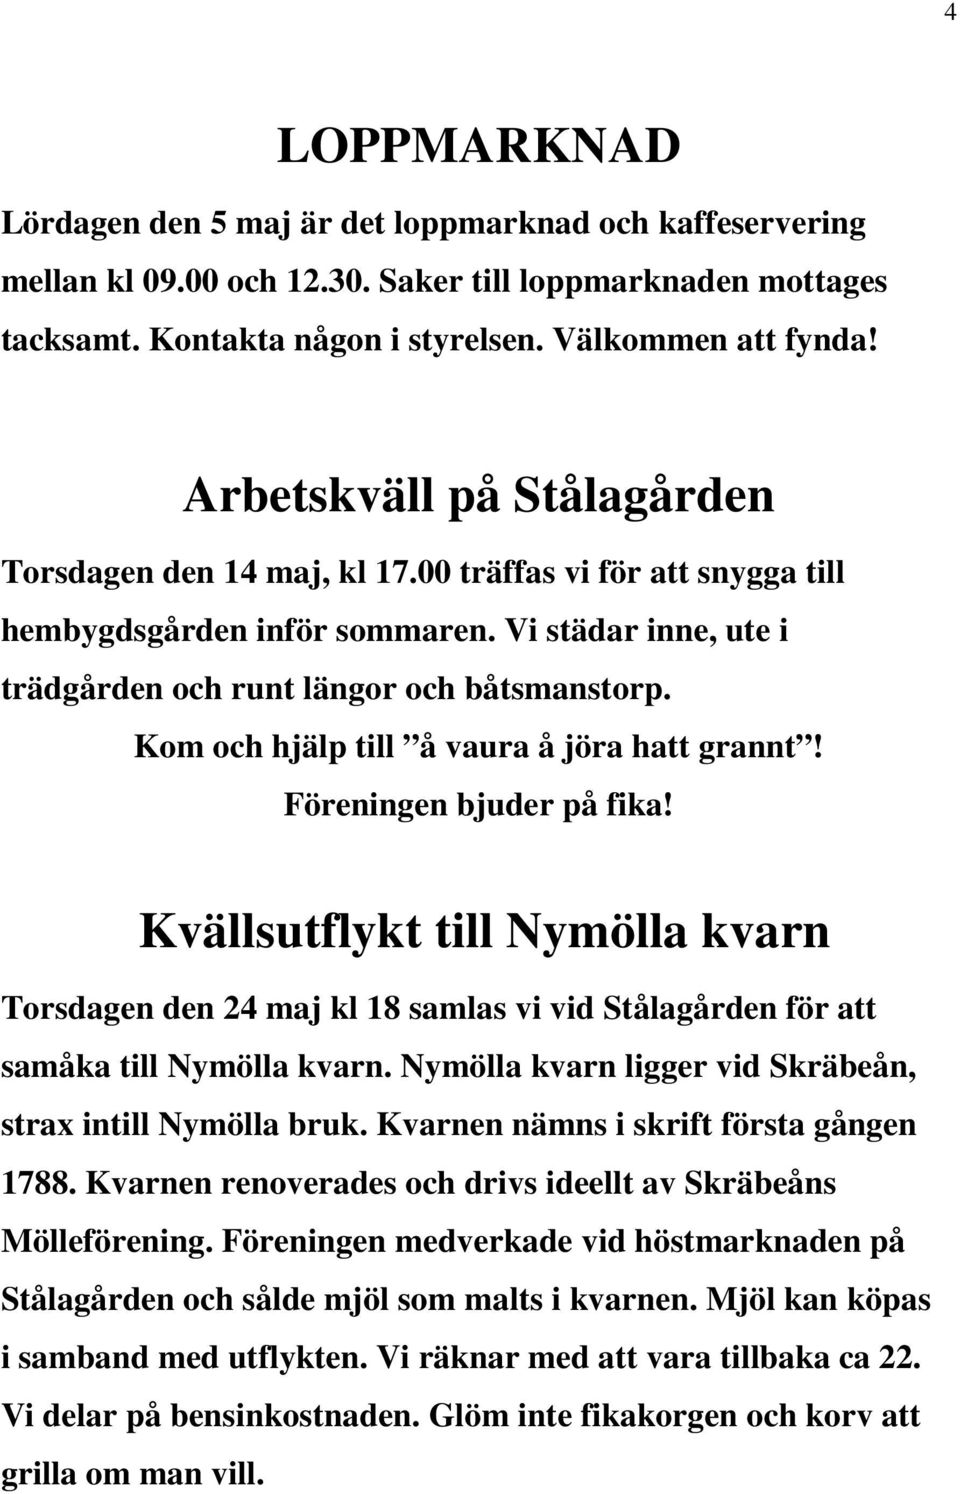 Kom och hjälp till å vaura å jöra hatt grannt! Föreningen bjuder på fika! Kvällsutflykt till Nymölla kvarn Torsdagen den 24 maj kl 18 samlas vi vid Stålagården för att samåka till Nymölla kvarn.